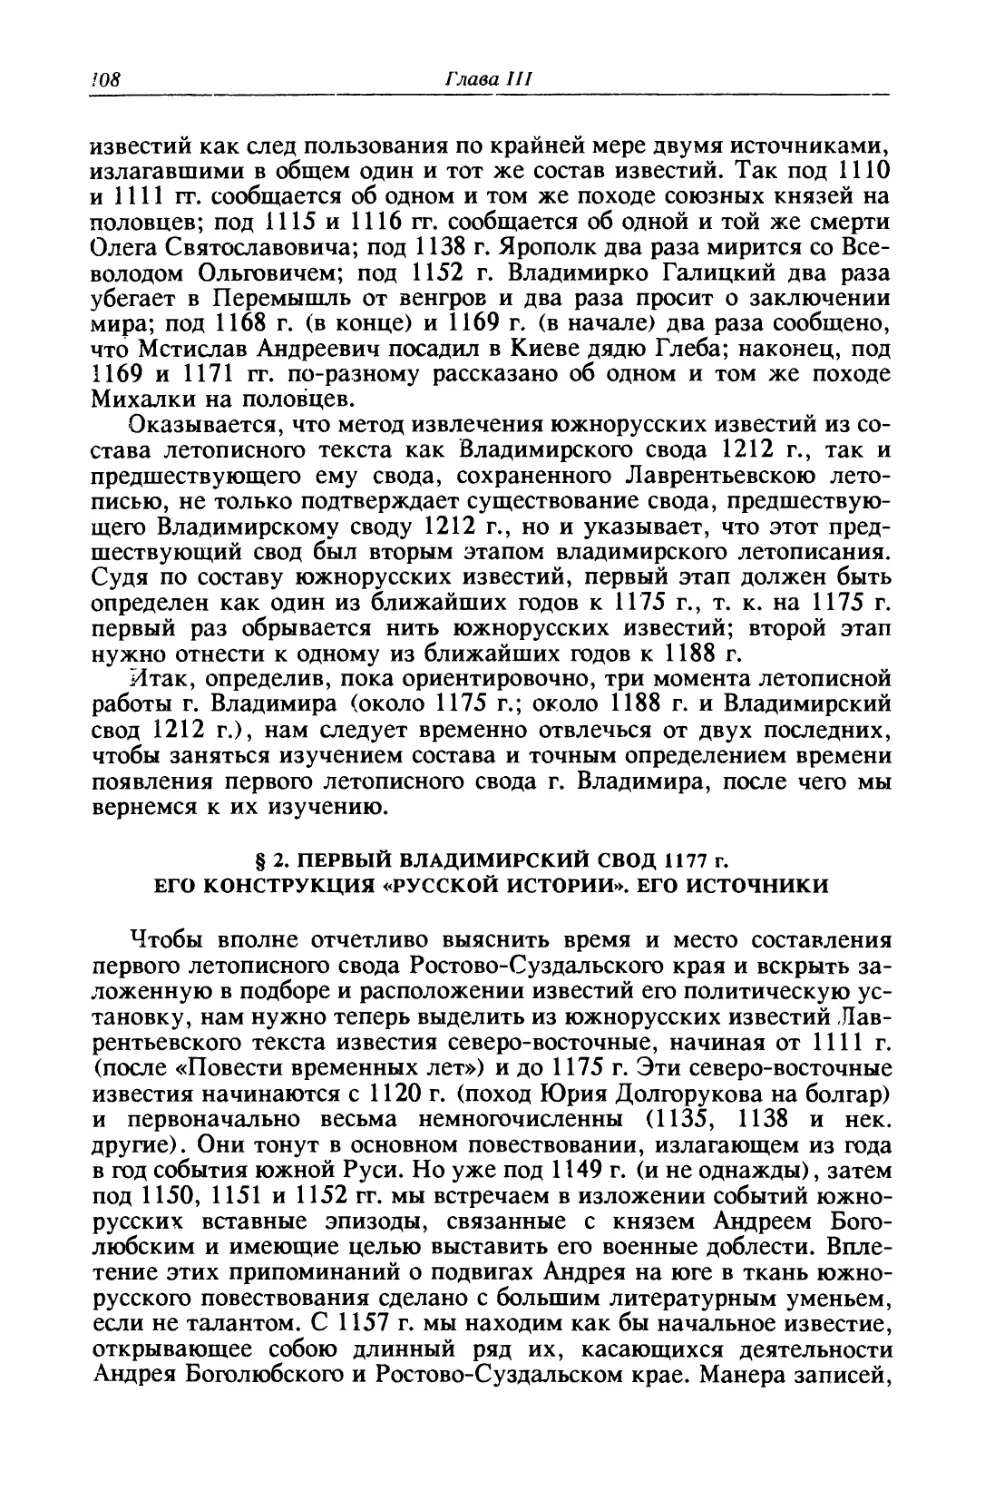 § 2. Первый Владимирский свод 1177 г. Его конструкция «русской истории». Его источники